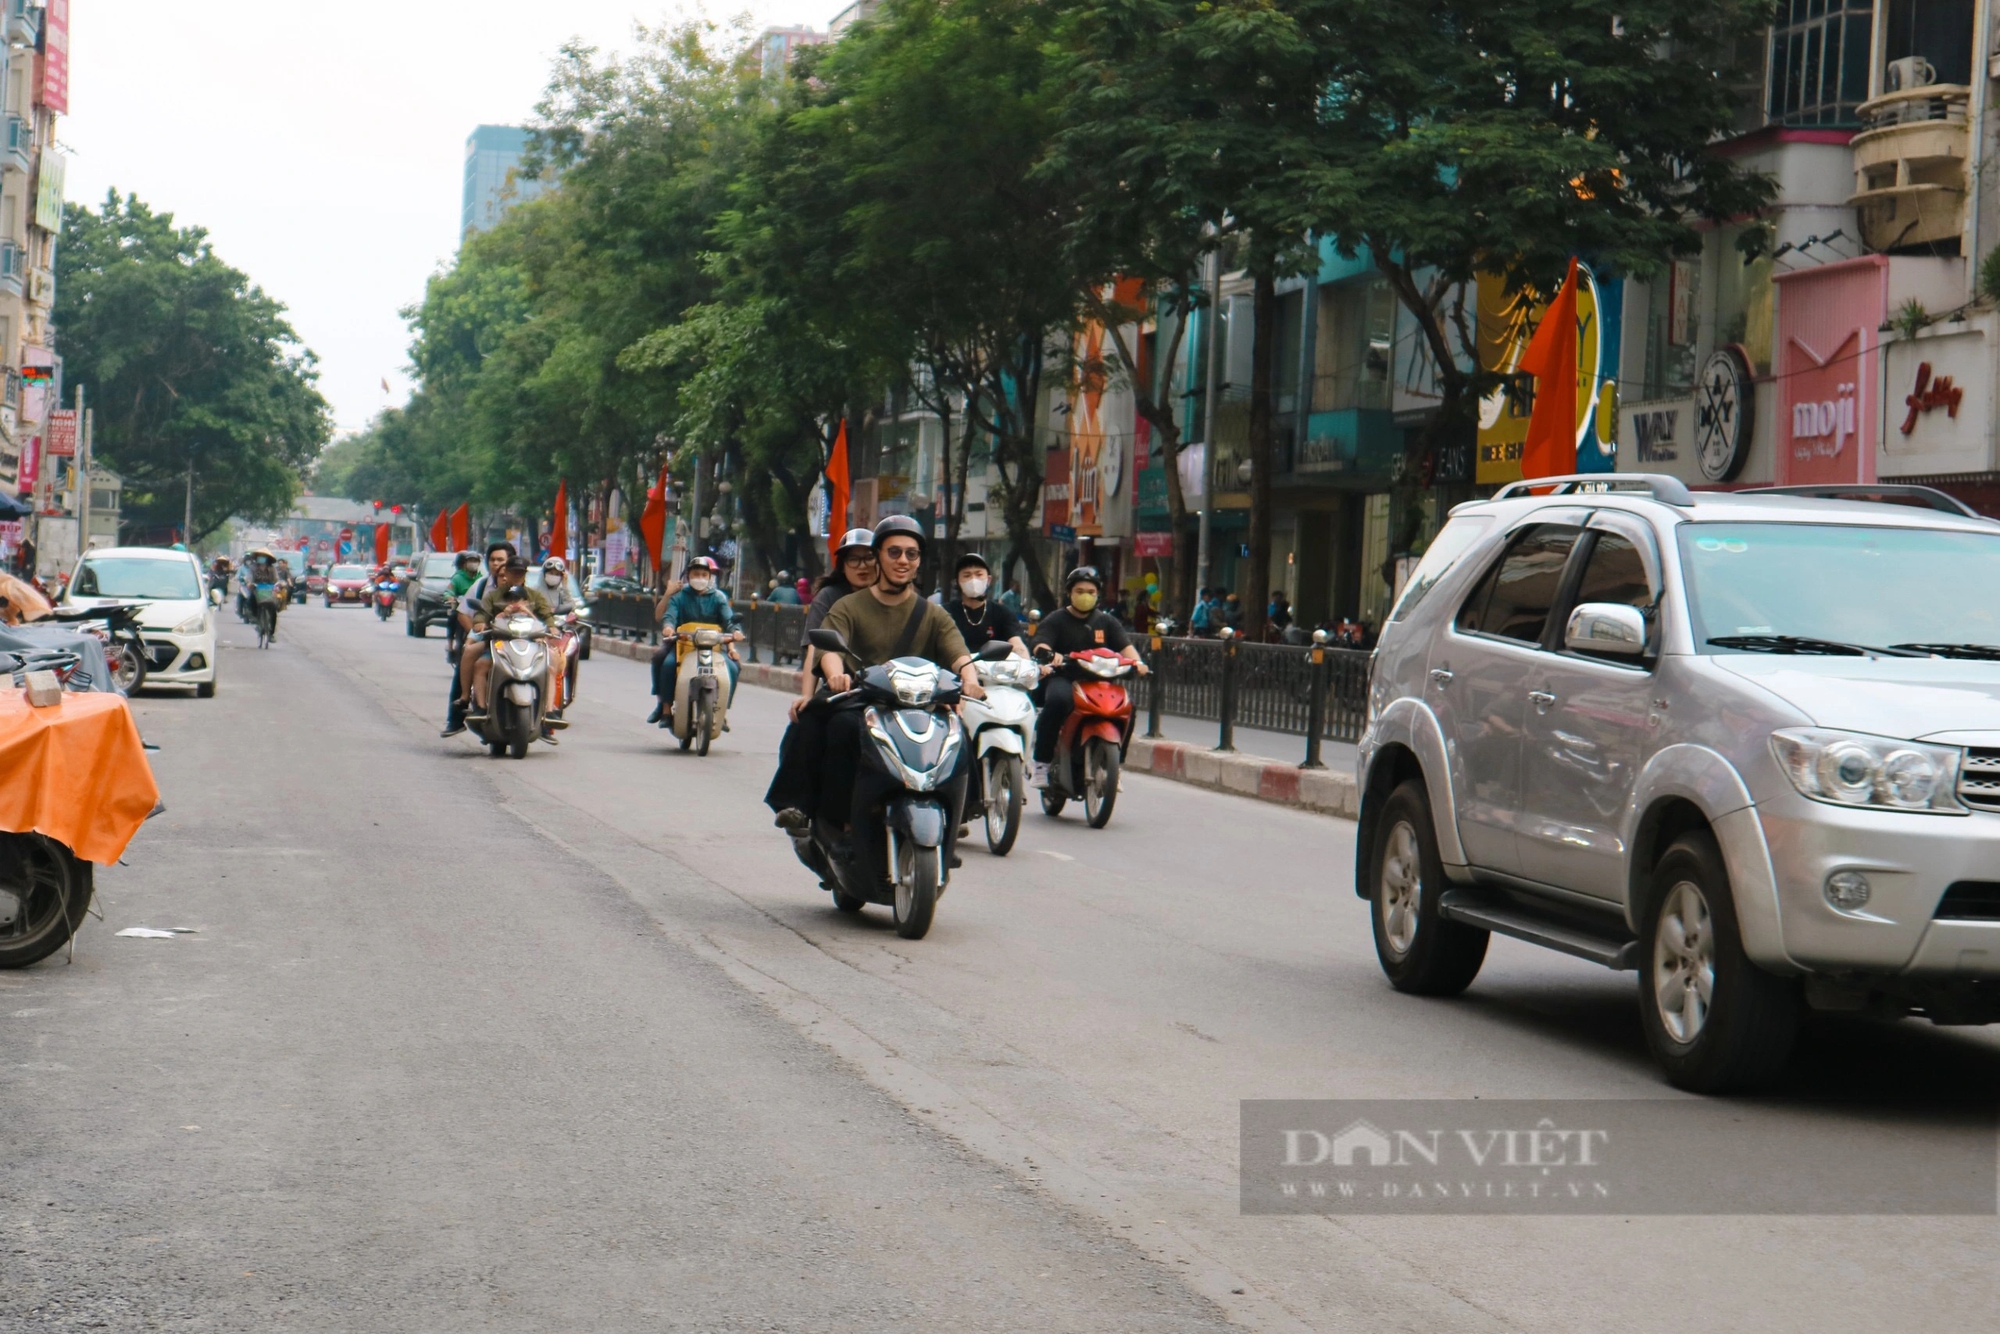 Dự án cải tạo nút giao thông Chùa Bộc – Thái Hà, gần hoàn thiện sau hàng chục năm triển khai- Ảnh 4.